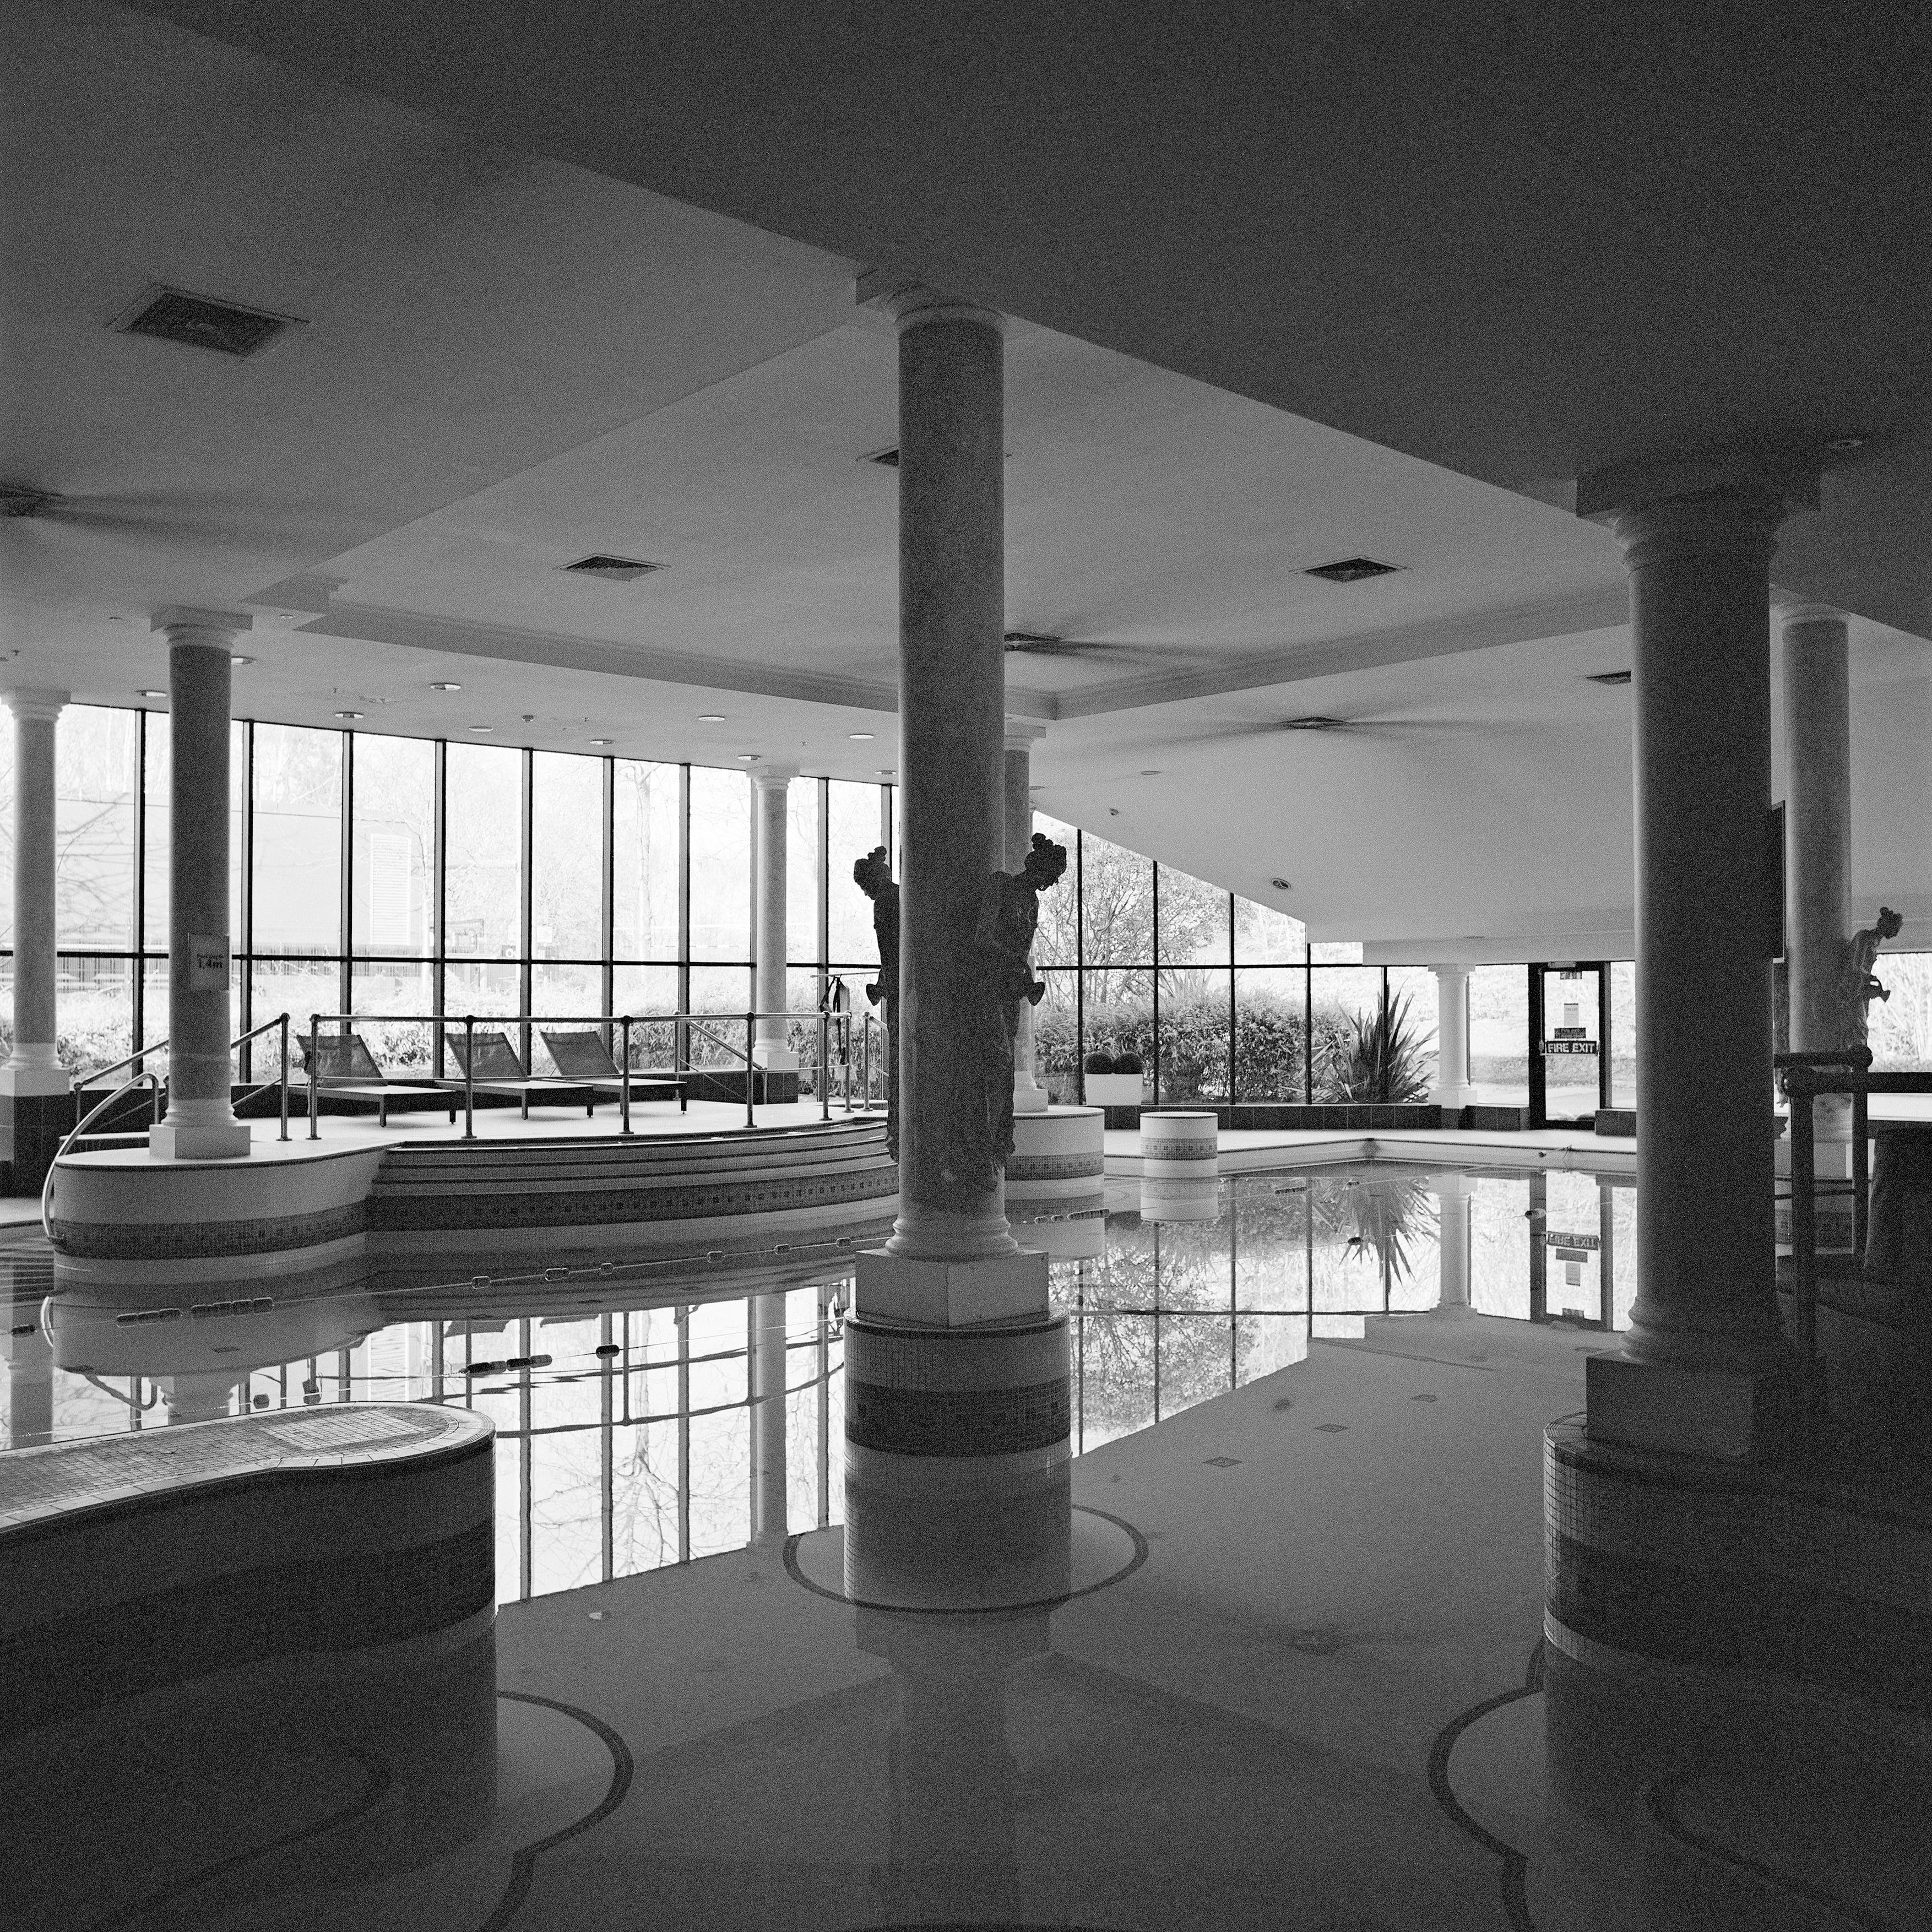 Monochrome Square Architecture Photography: Empty Swimming Pool Design.